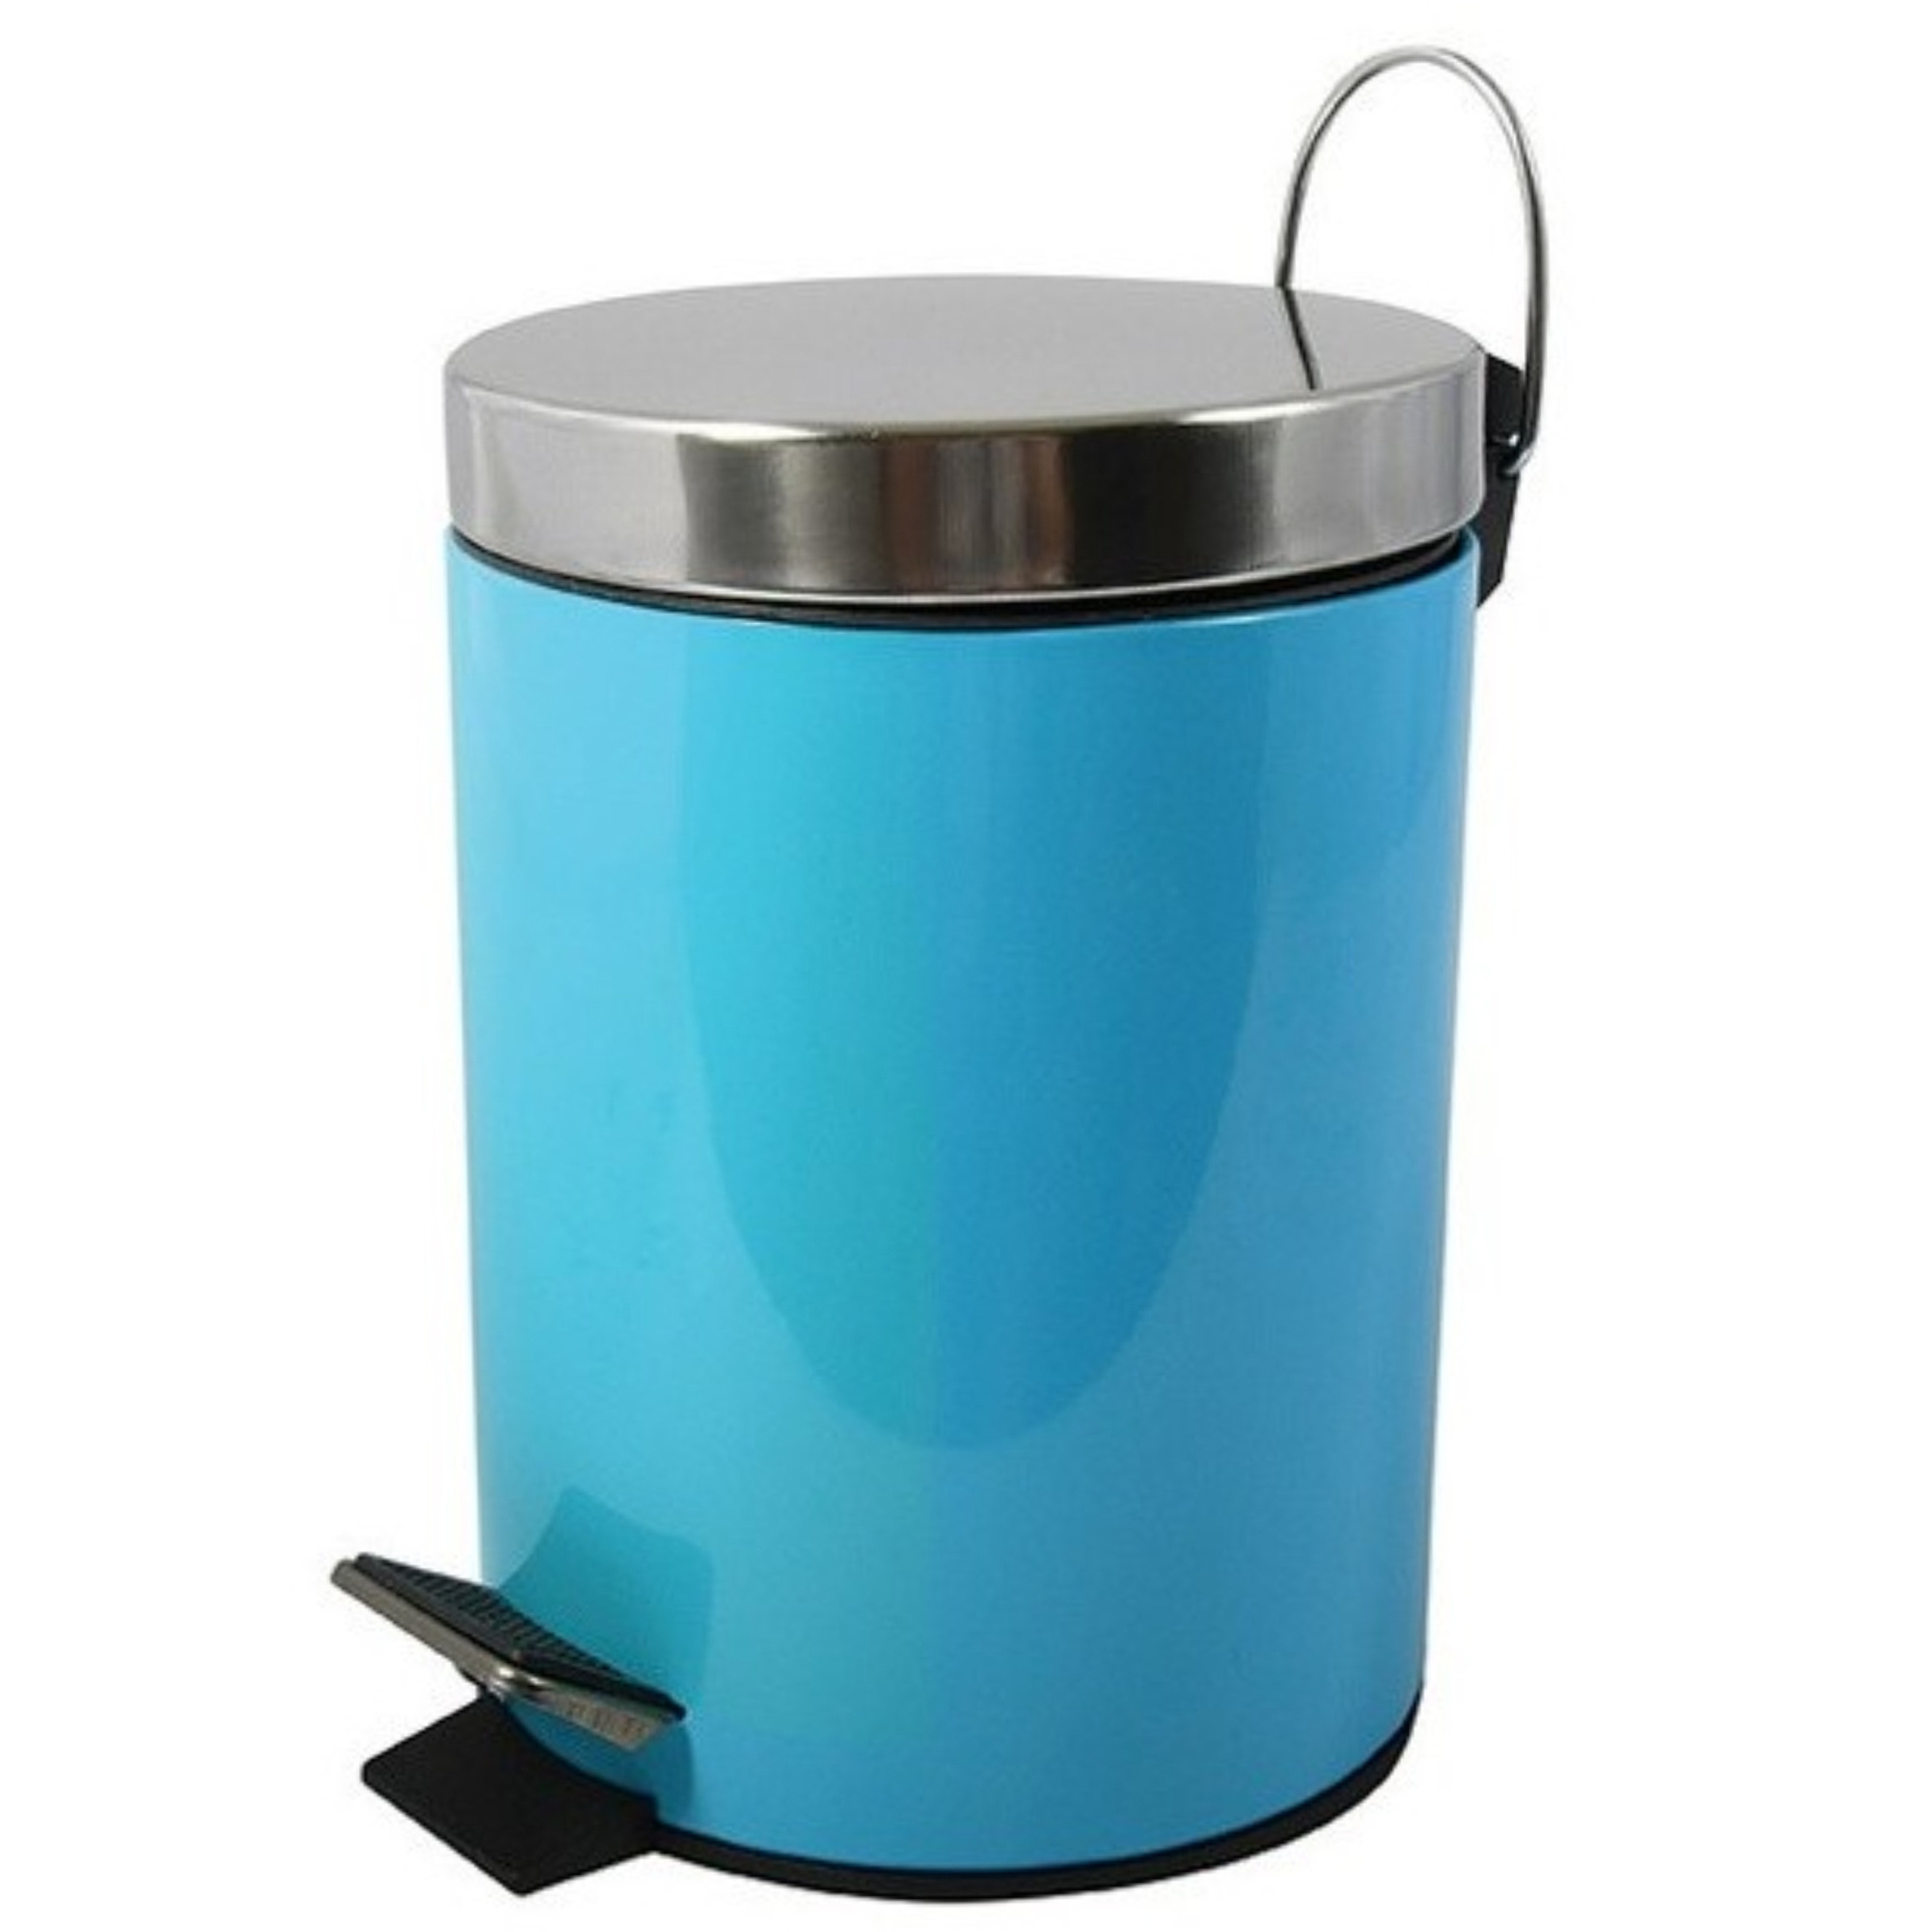 Prullenbak-pedaalemmer metaal turquoise blauw 5 liter 20 x 28 cm Badkamer-toilet